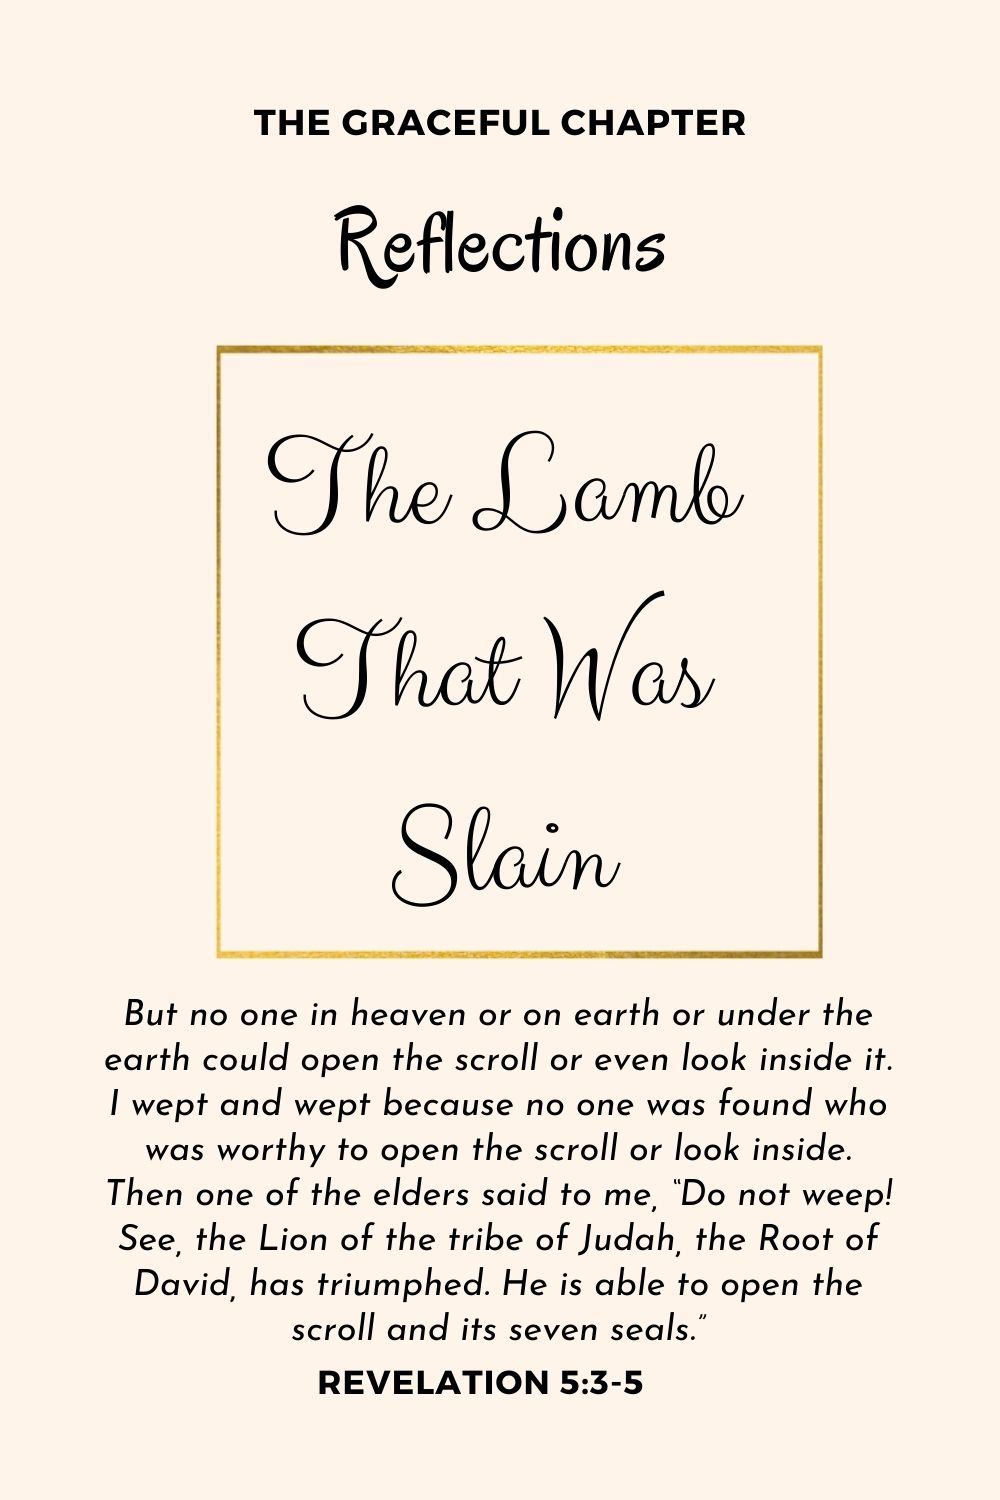 Reflection - Revelation 5:3-5 - The Lamb That Was Slain